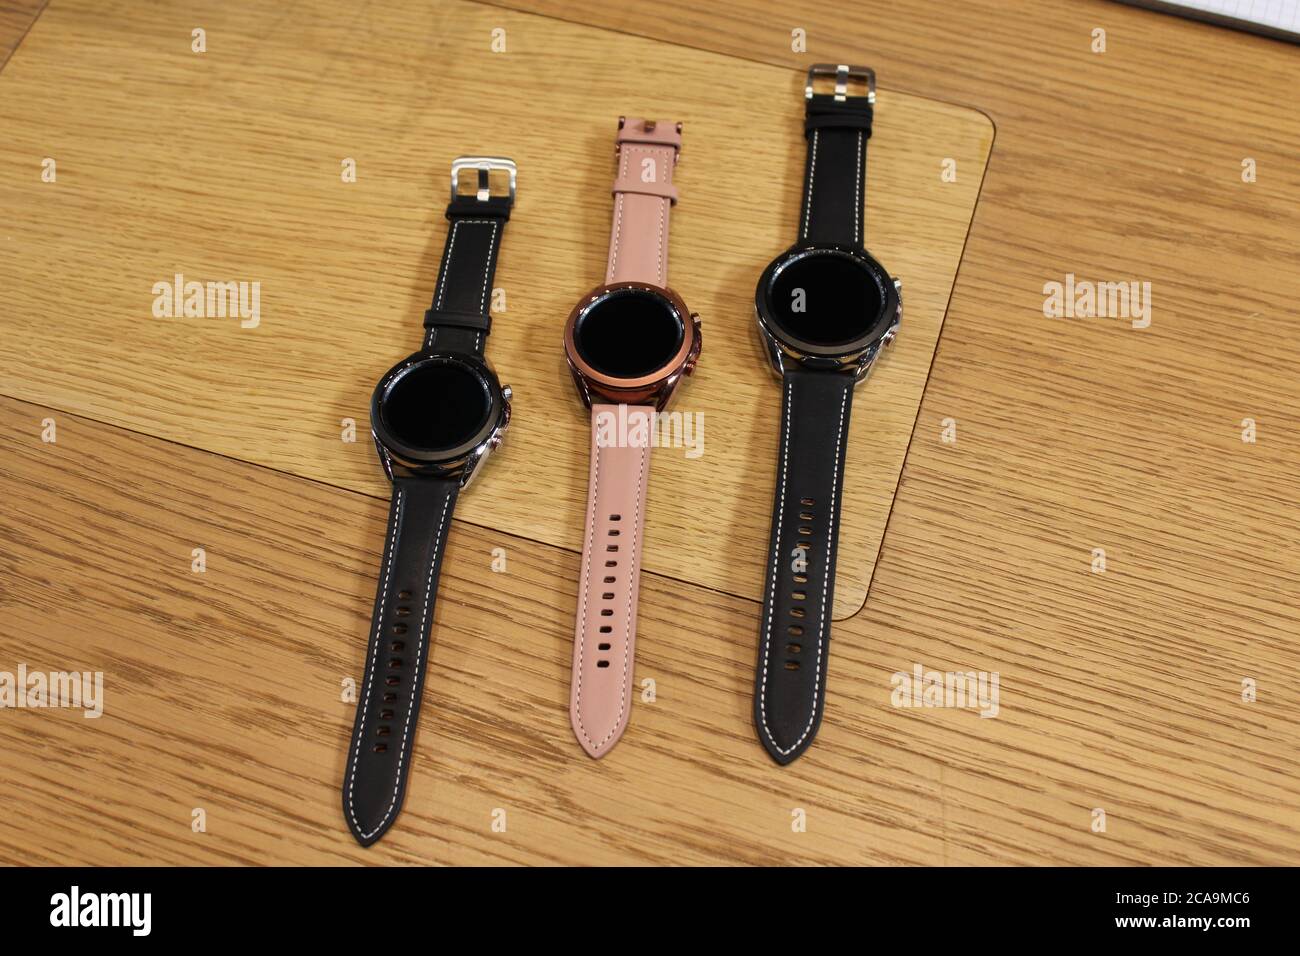 Die Galaxy Watch 3 Smartwatch, die mit 5G-Unterstützung kommt, von Samsung vorgestellt, wie das Unternehmen würde "begrüßen die Gelegenheit", um beim Aufbau der britischen helfen???s 5G-Netze nach der Entscheidung, Huawei zu verbieten, sagte ein britischer Geschäftsführer. Stockfoto